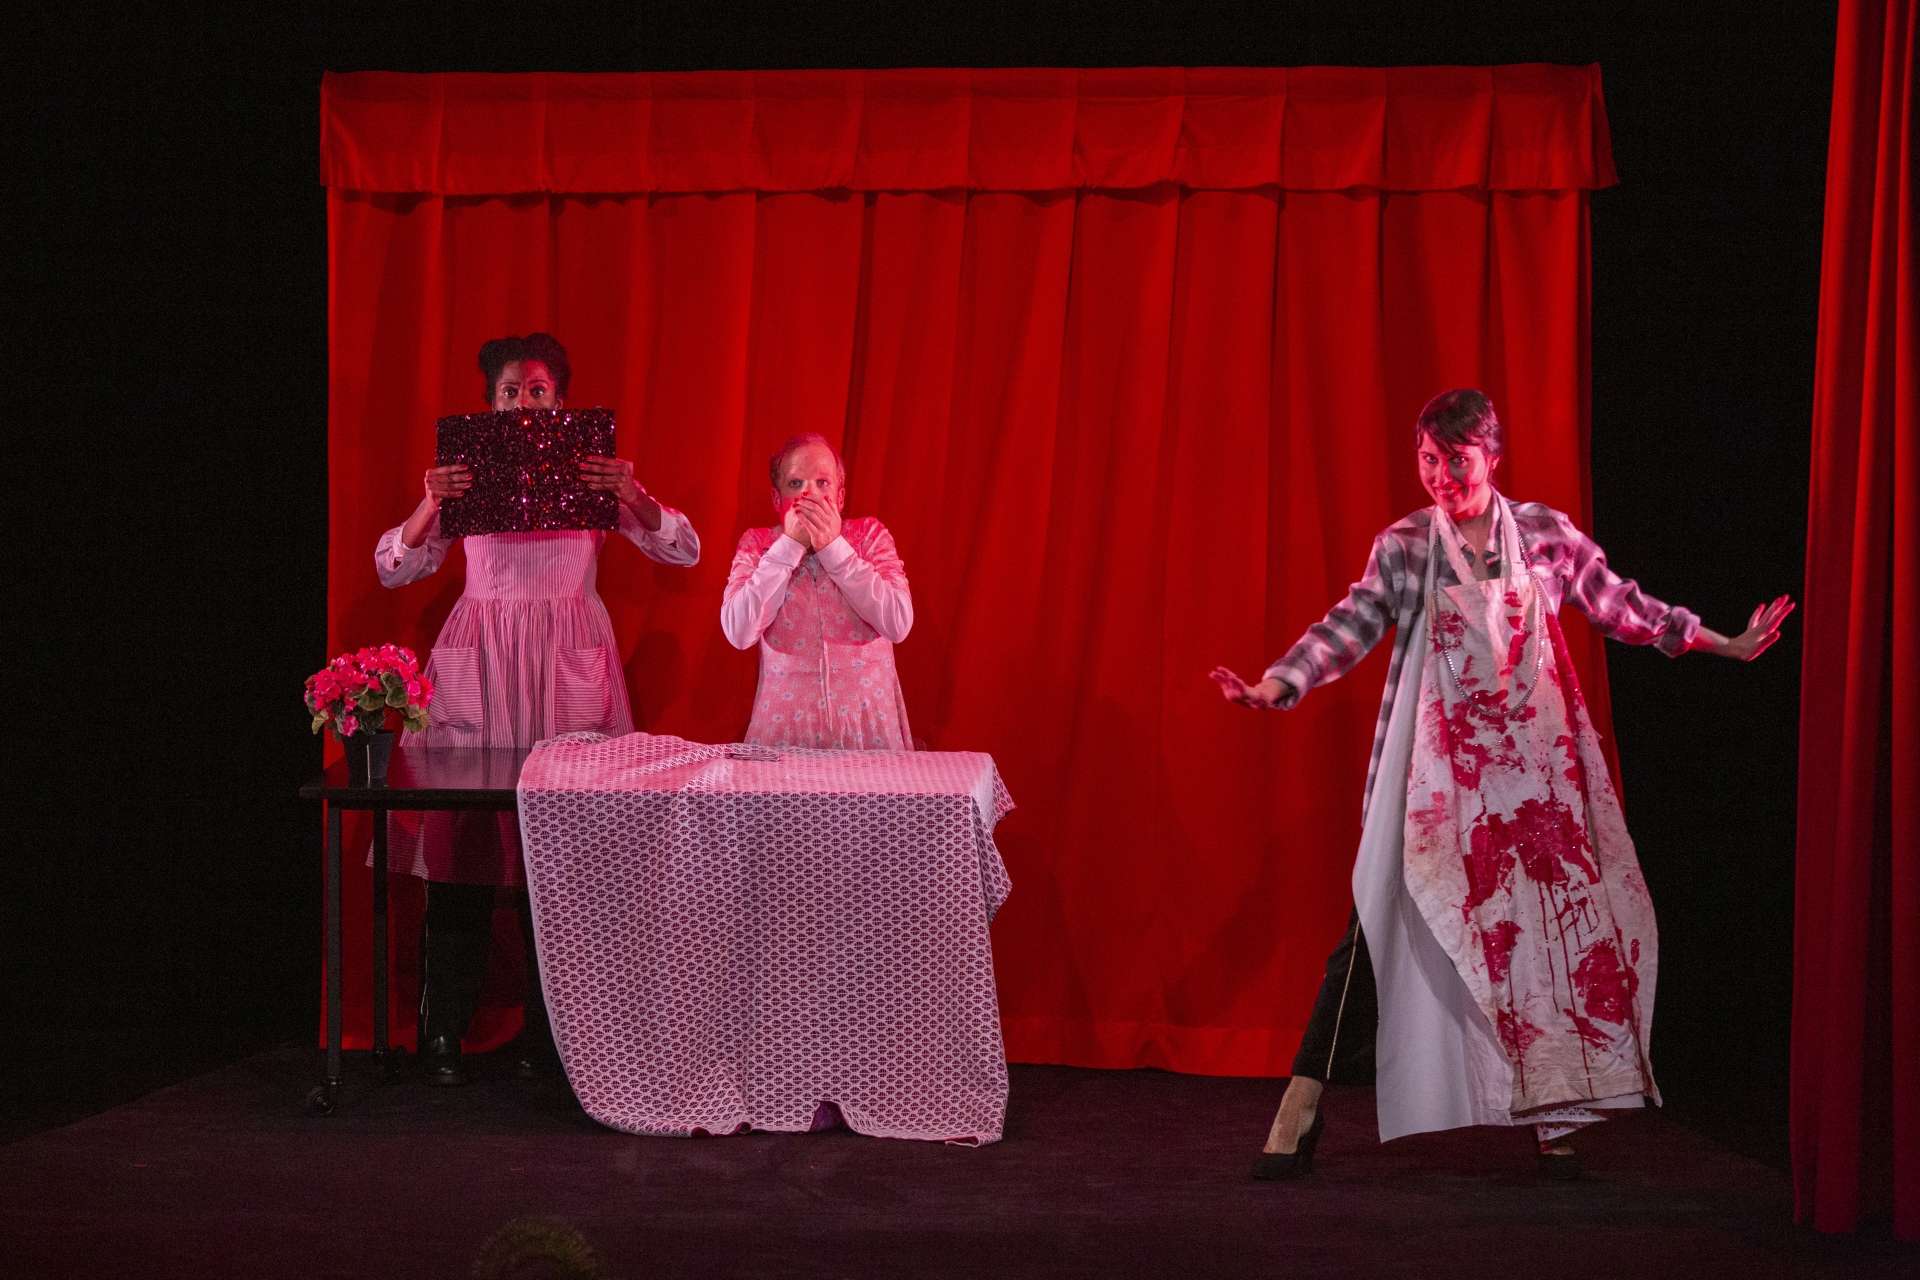 Photo du spectacle Fin (Faim) : Trois personnes sont sur scènes, deux d'entre elles sont derrière une table et se cache le visage. Elles semblent avoir peur. La troisième personne à droite de l'image à un tablier taché de sang.